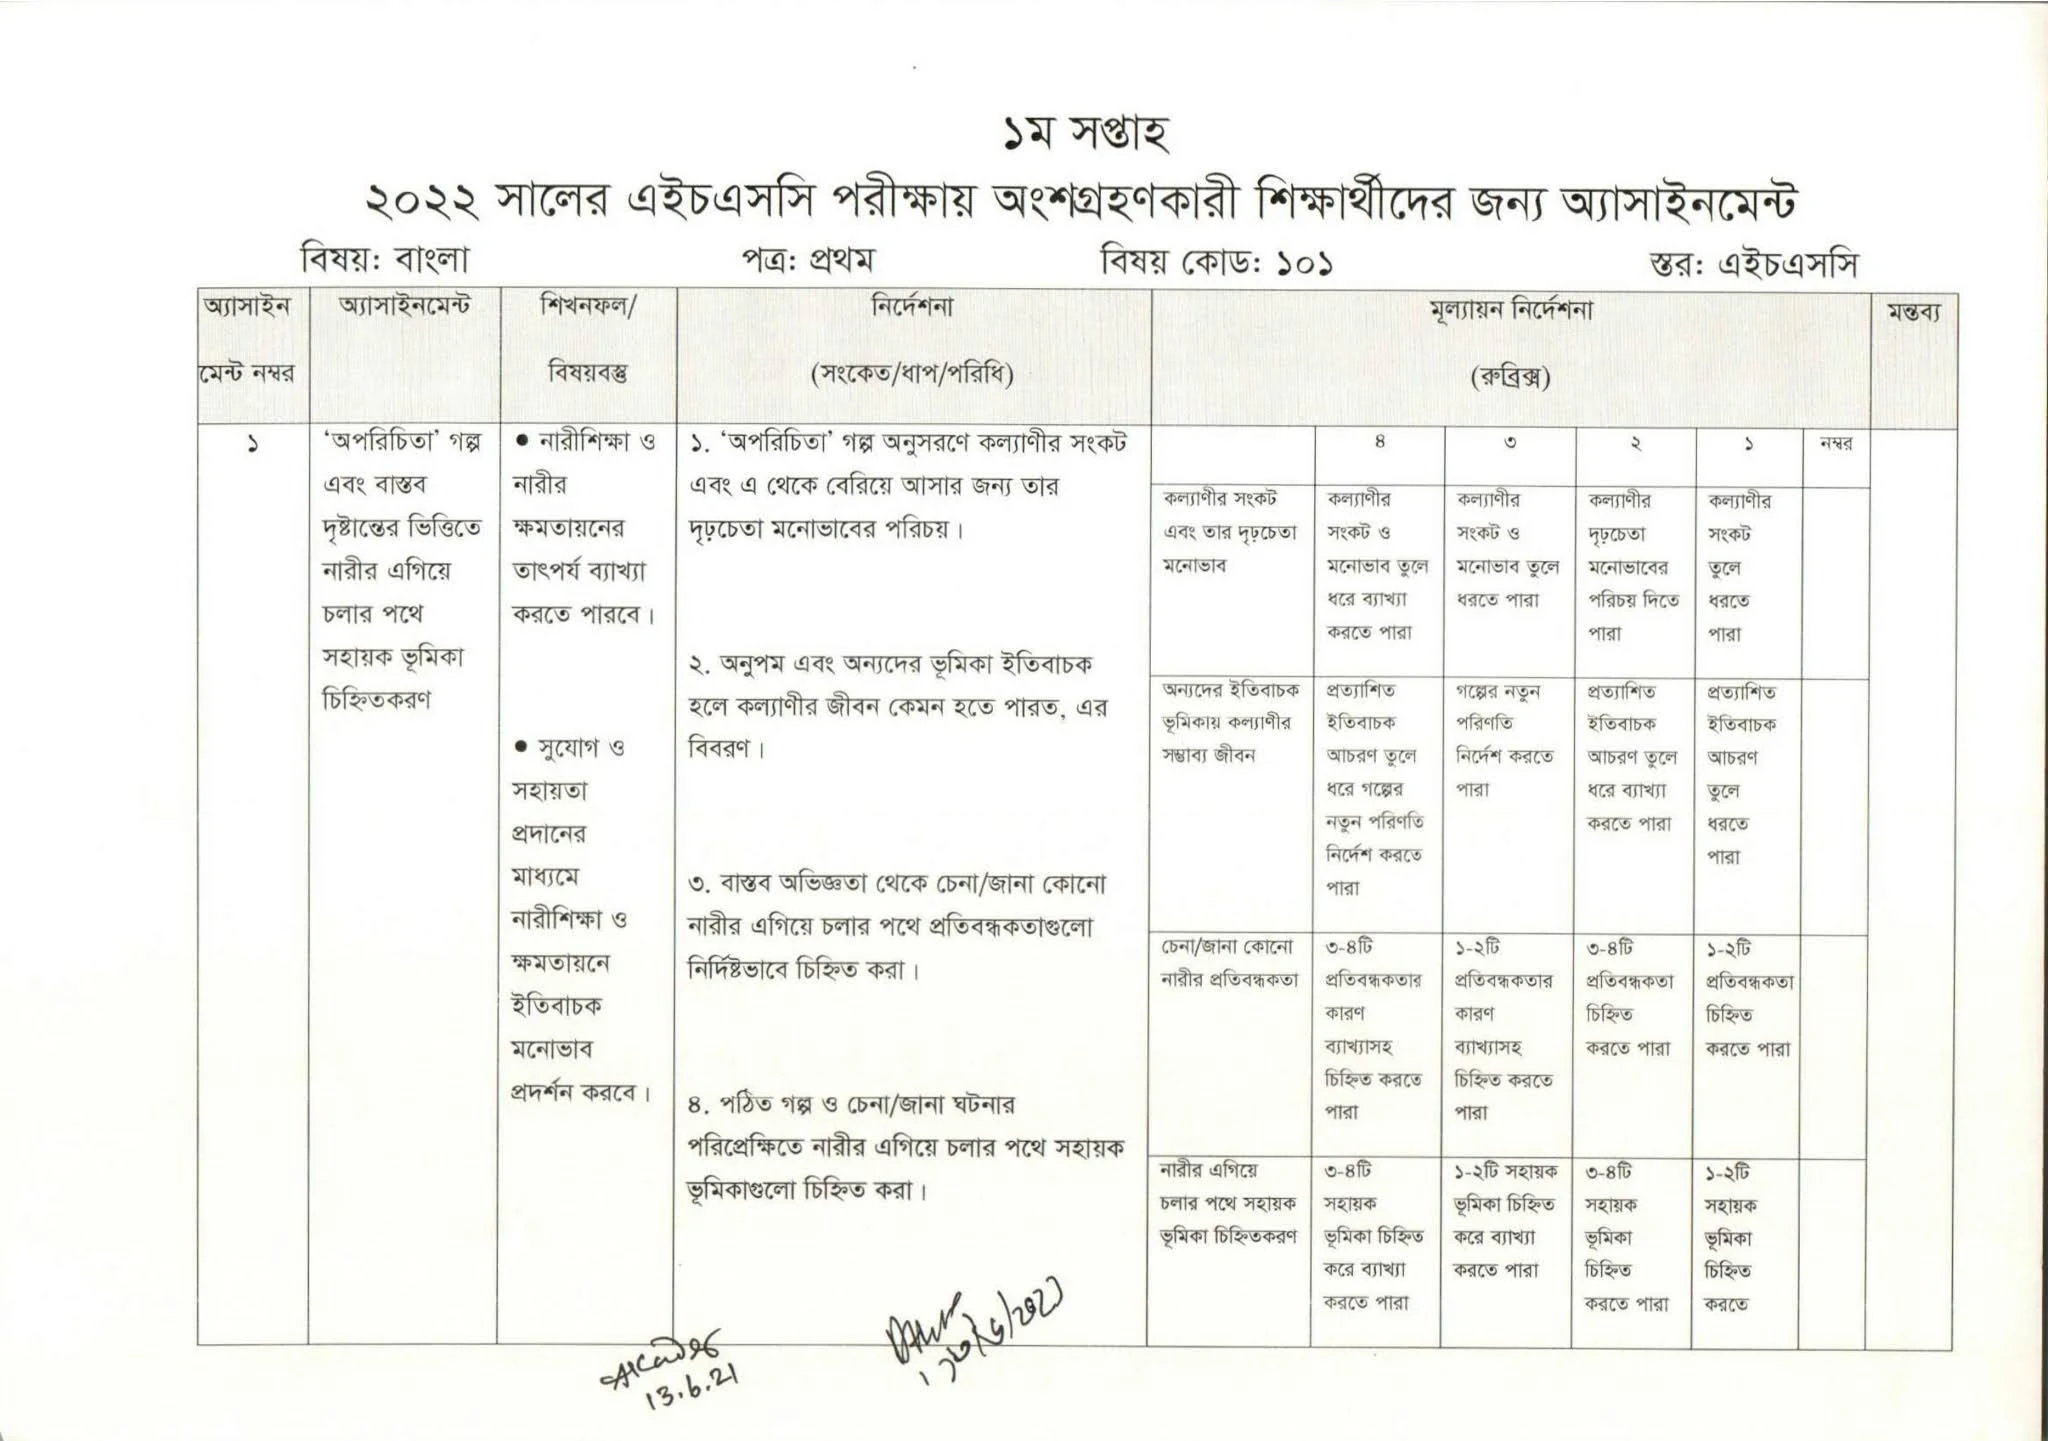 এইচএসসি বাংলা ১ম পত্র এসাইনমেন্ট উত্তর ও সমাধান ২০২১ (১ম সপ্তাহ)  - Hsc Bangla 1st Paper 1st Week assignment Answer 2021